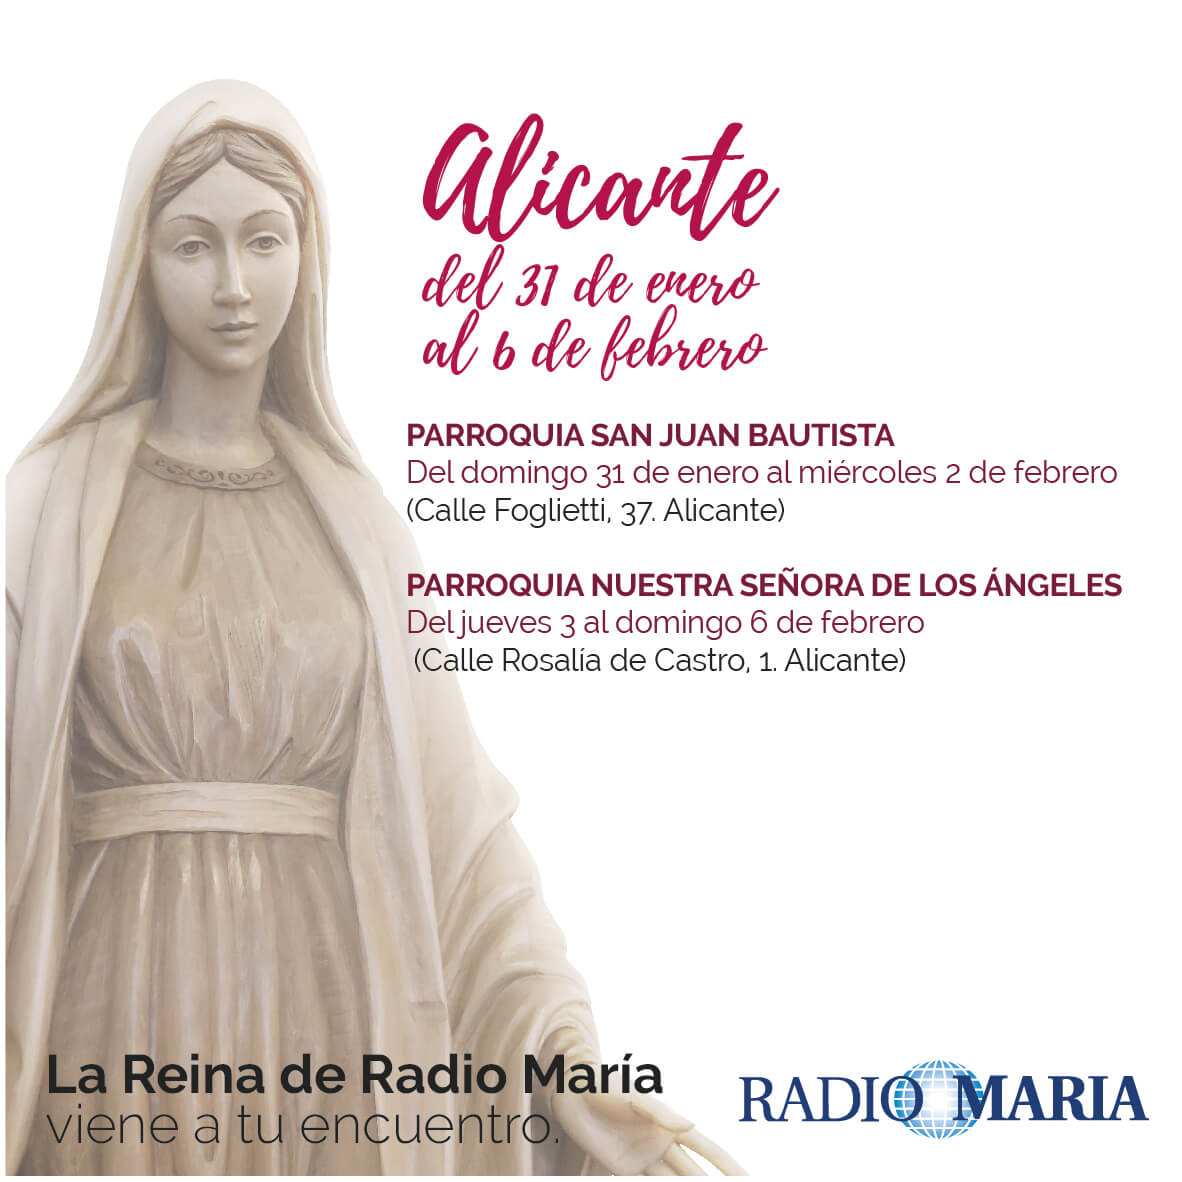 La Reina de Radio María visita Alicante